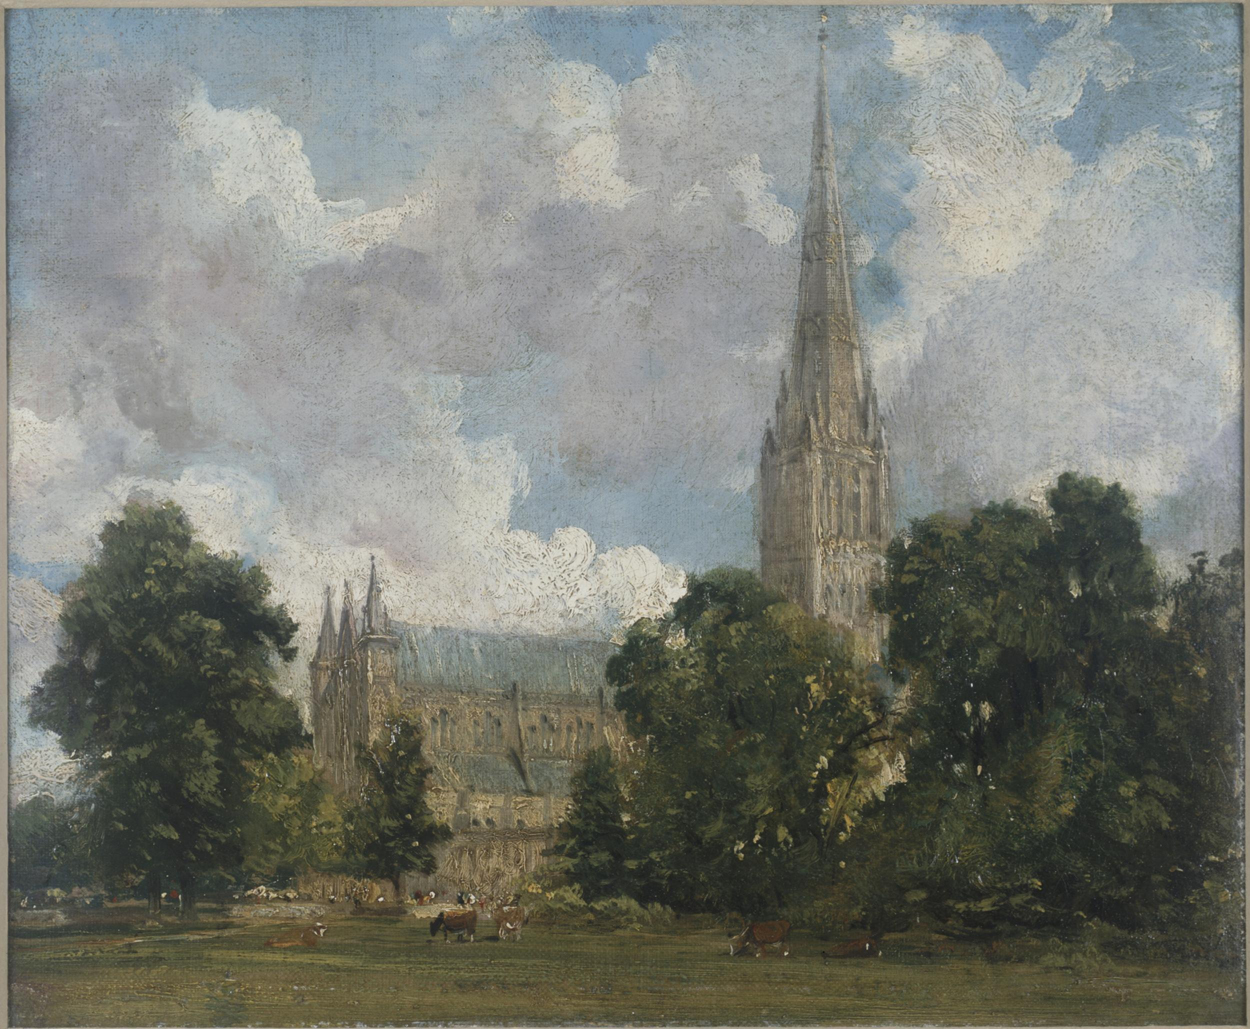 كاتدرائية سالزبوري من الجنوب الغربي by John Constable - حوالي 1820 - 25 x 30 cm 